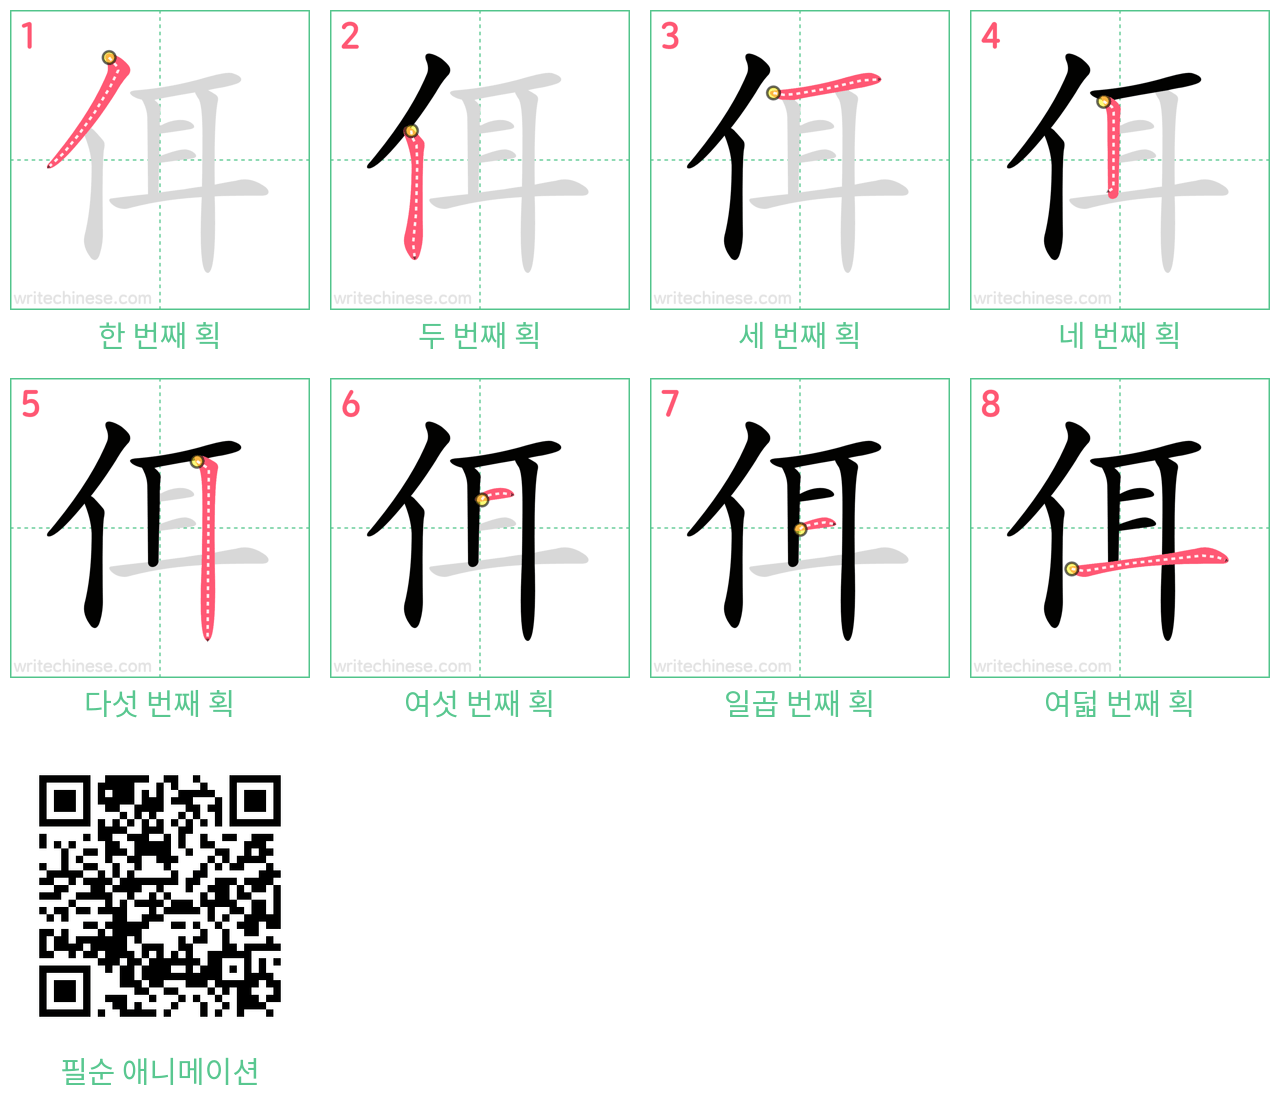 佴 step-by-step stroke order diagrams